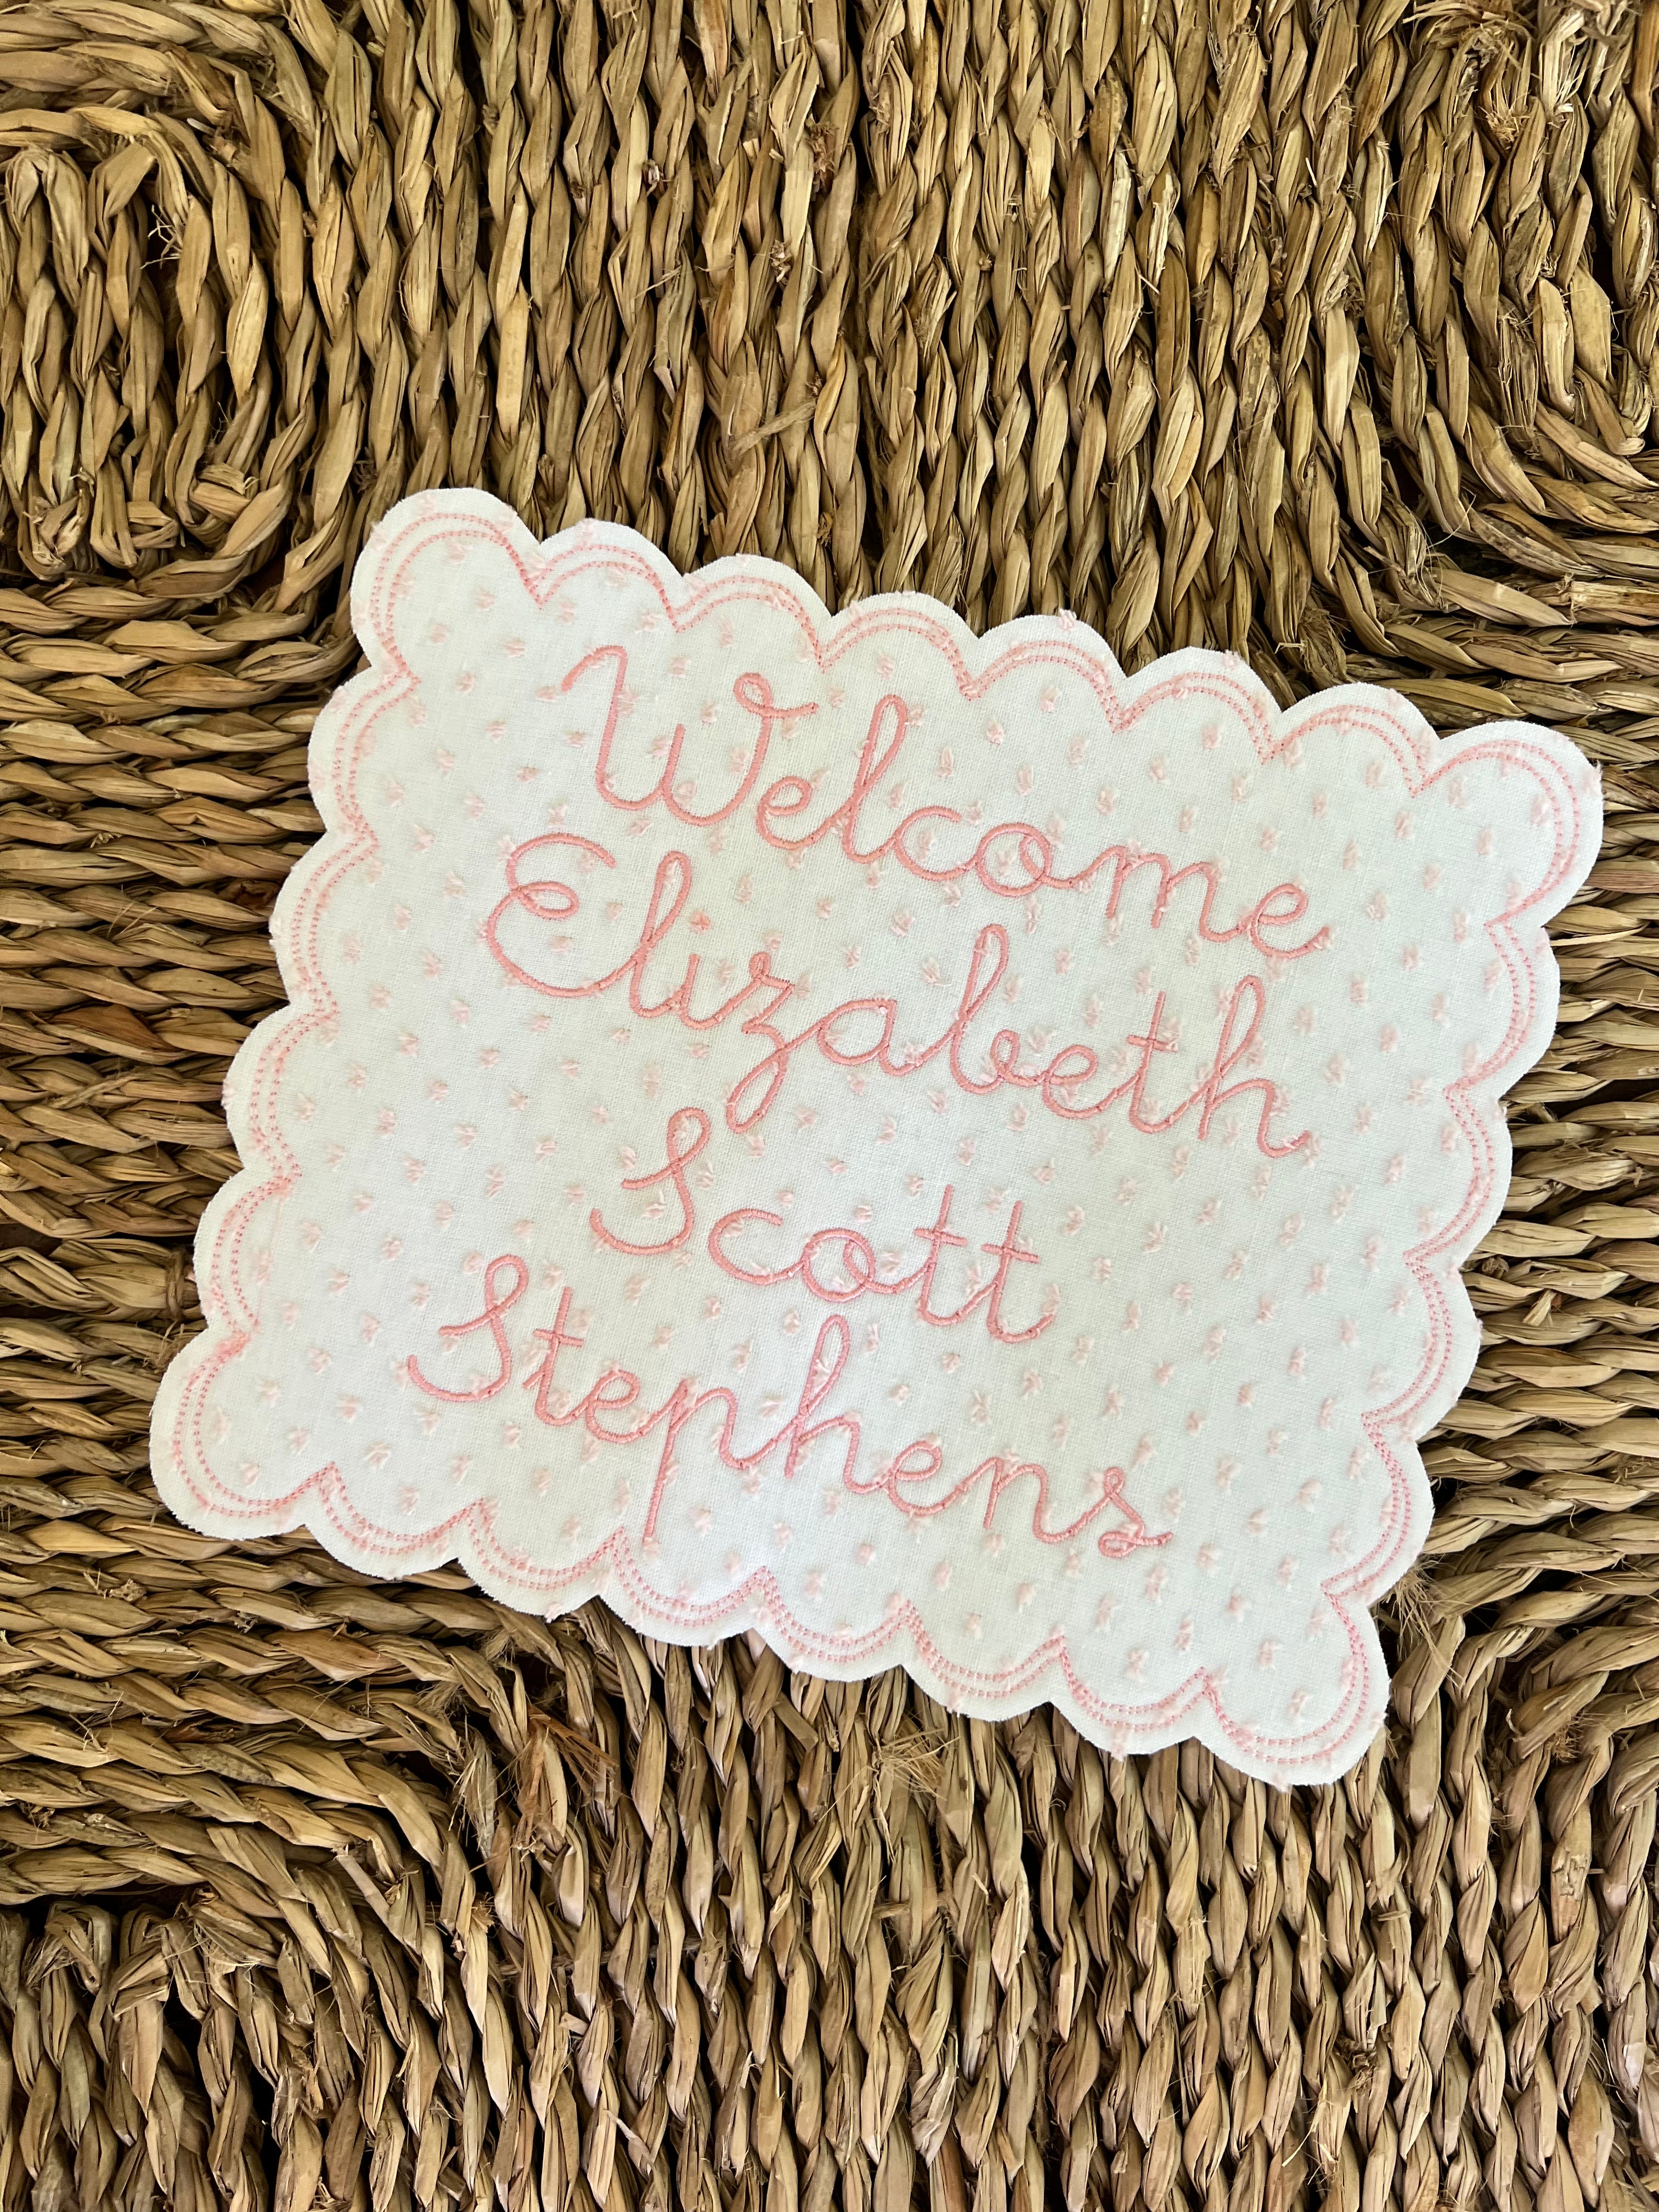 The “Elizabeth” Baby Plaque